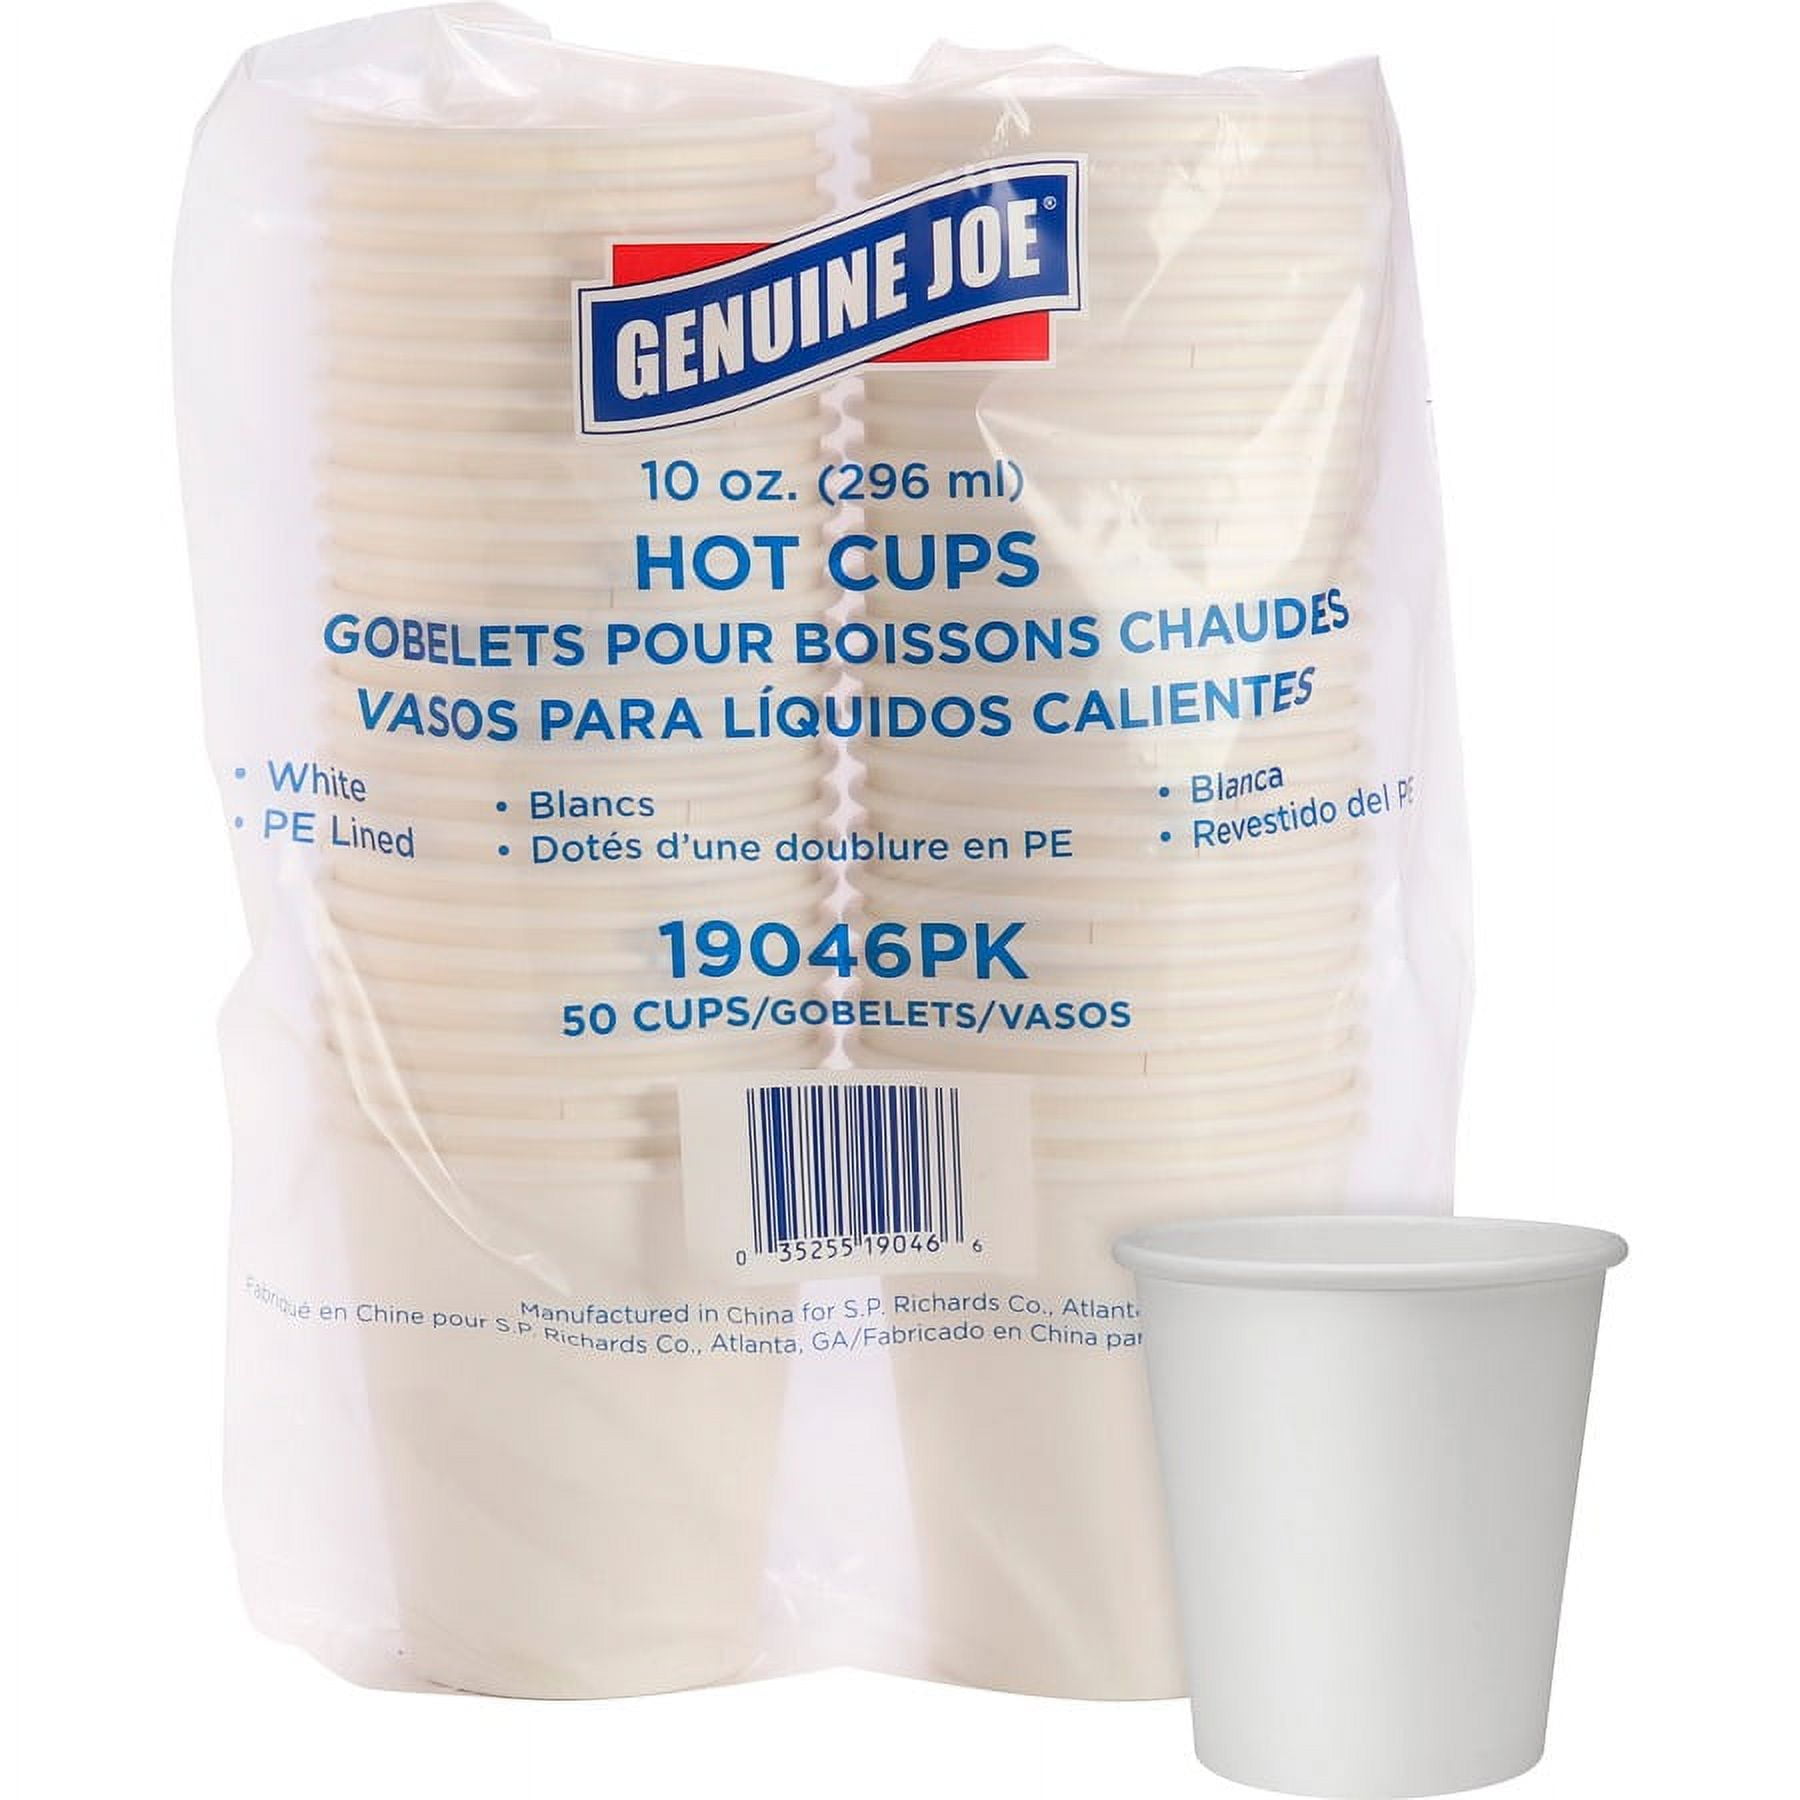 Solo 3 oz Plastic Bathroom Cups - 150 Count - White